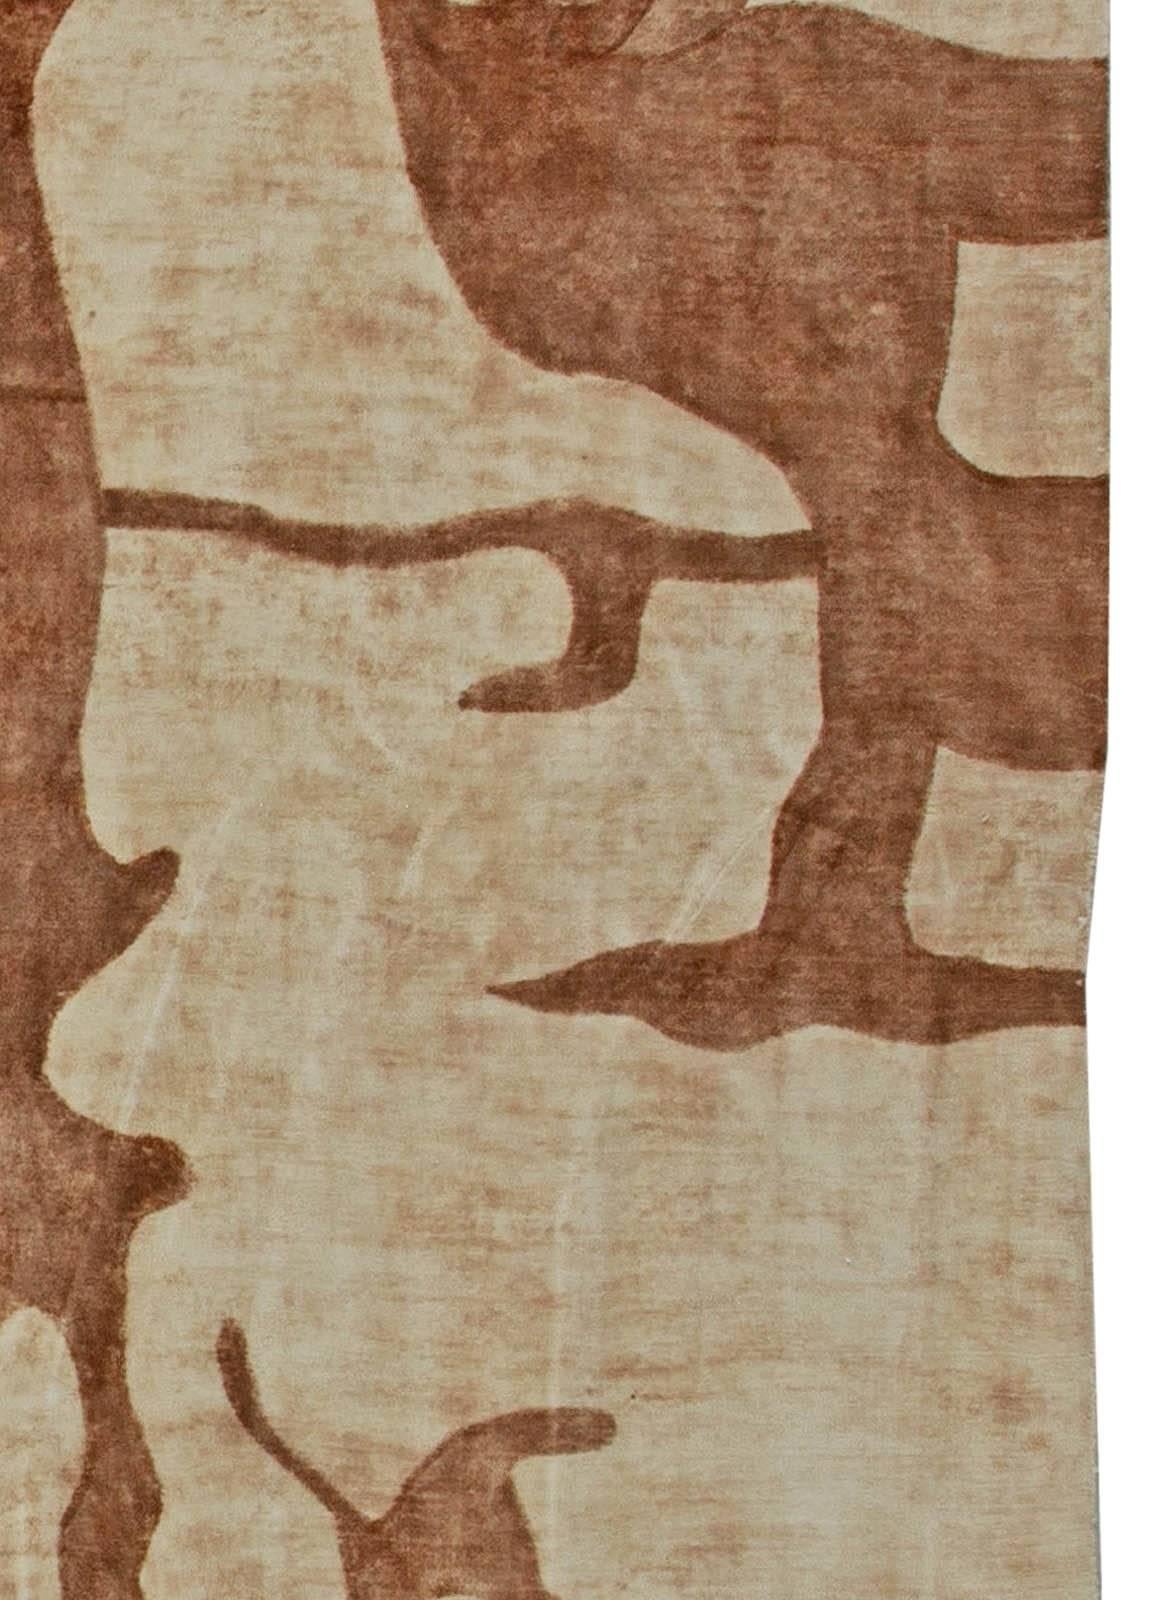 Modern abstract brown, beige handmade wool rug by Doris Leslie Blau.
Size: 12'0